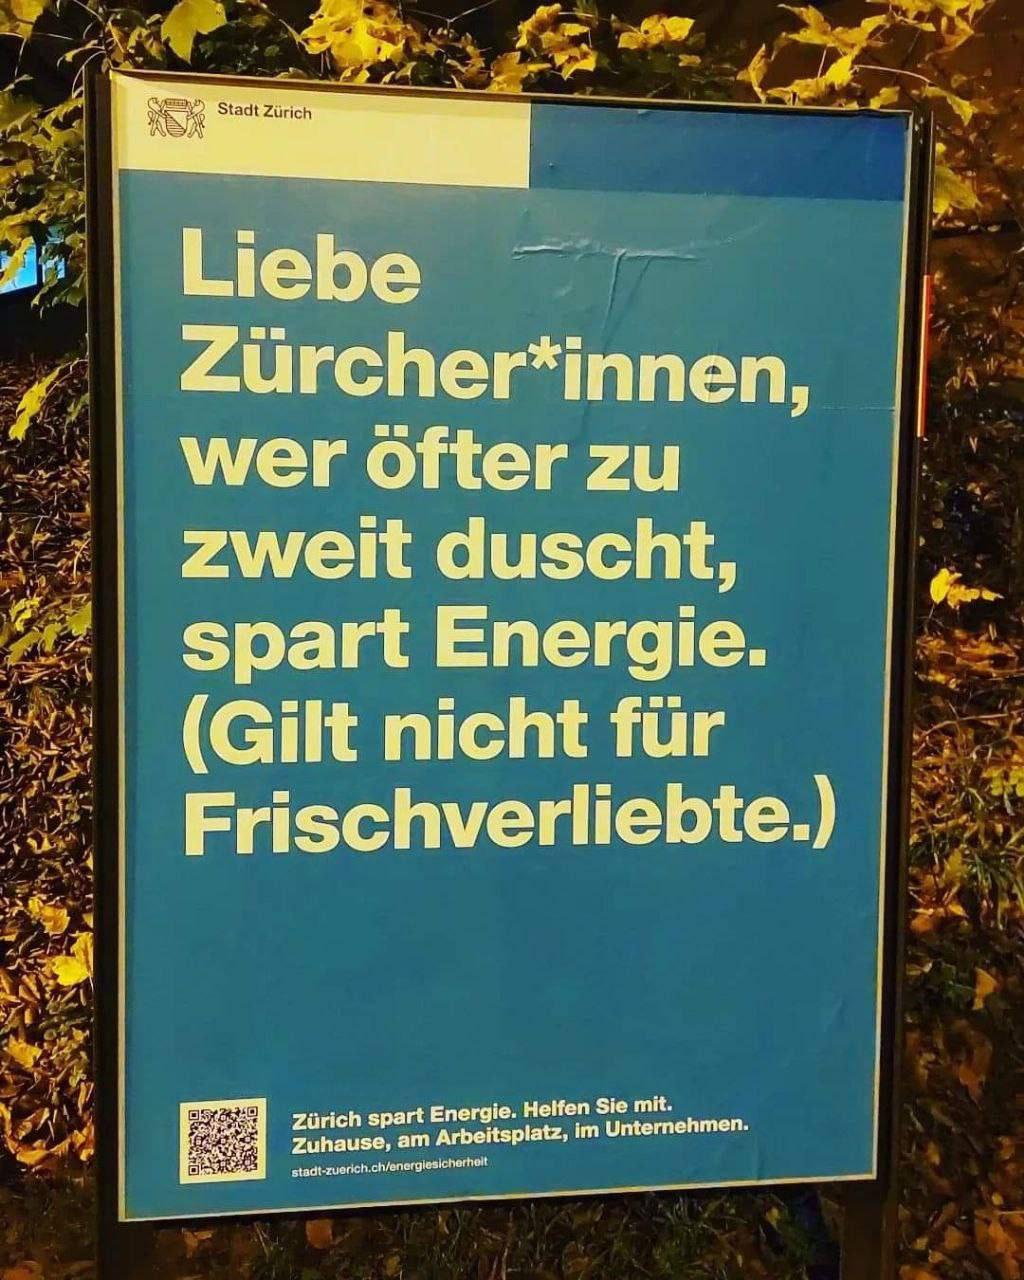 Жителей Цюриха призвали принимать душ по двое для экономии энергии.